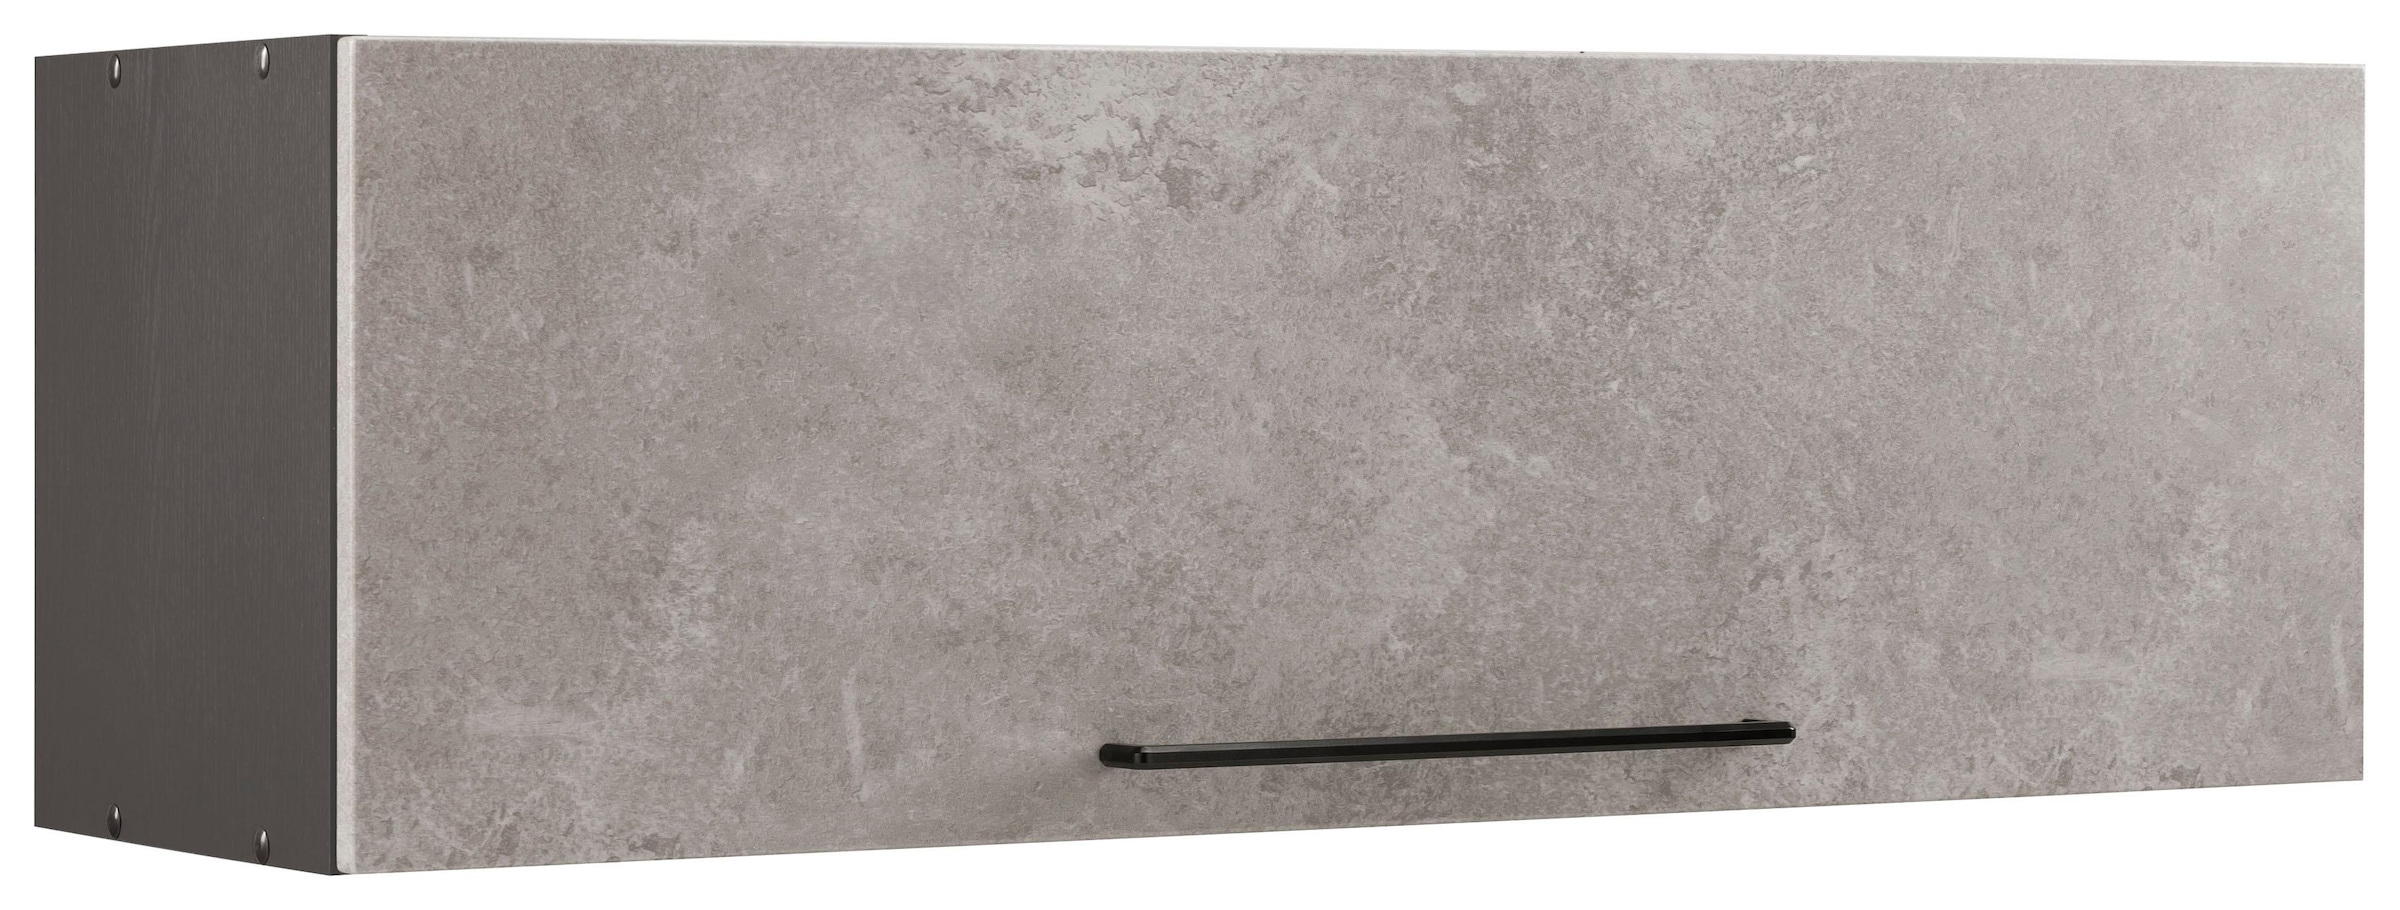 HELD MÖBEL Klapphängeschrank »Tulsa«, Trouver Metallgriff, schwarzer 100 cm Klappe, mit Front MDF 1 sur breit